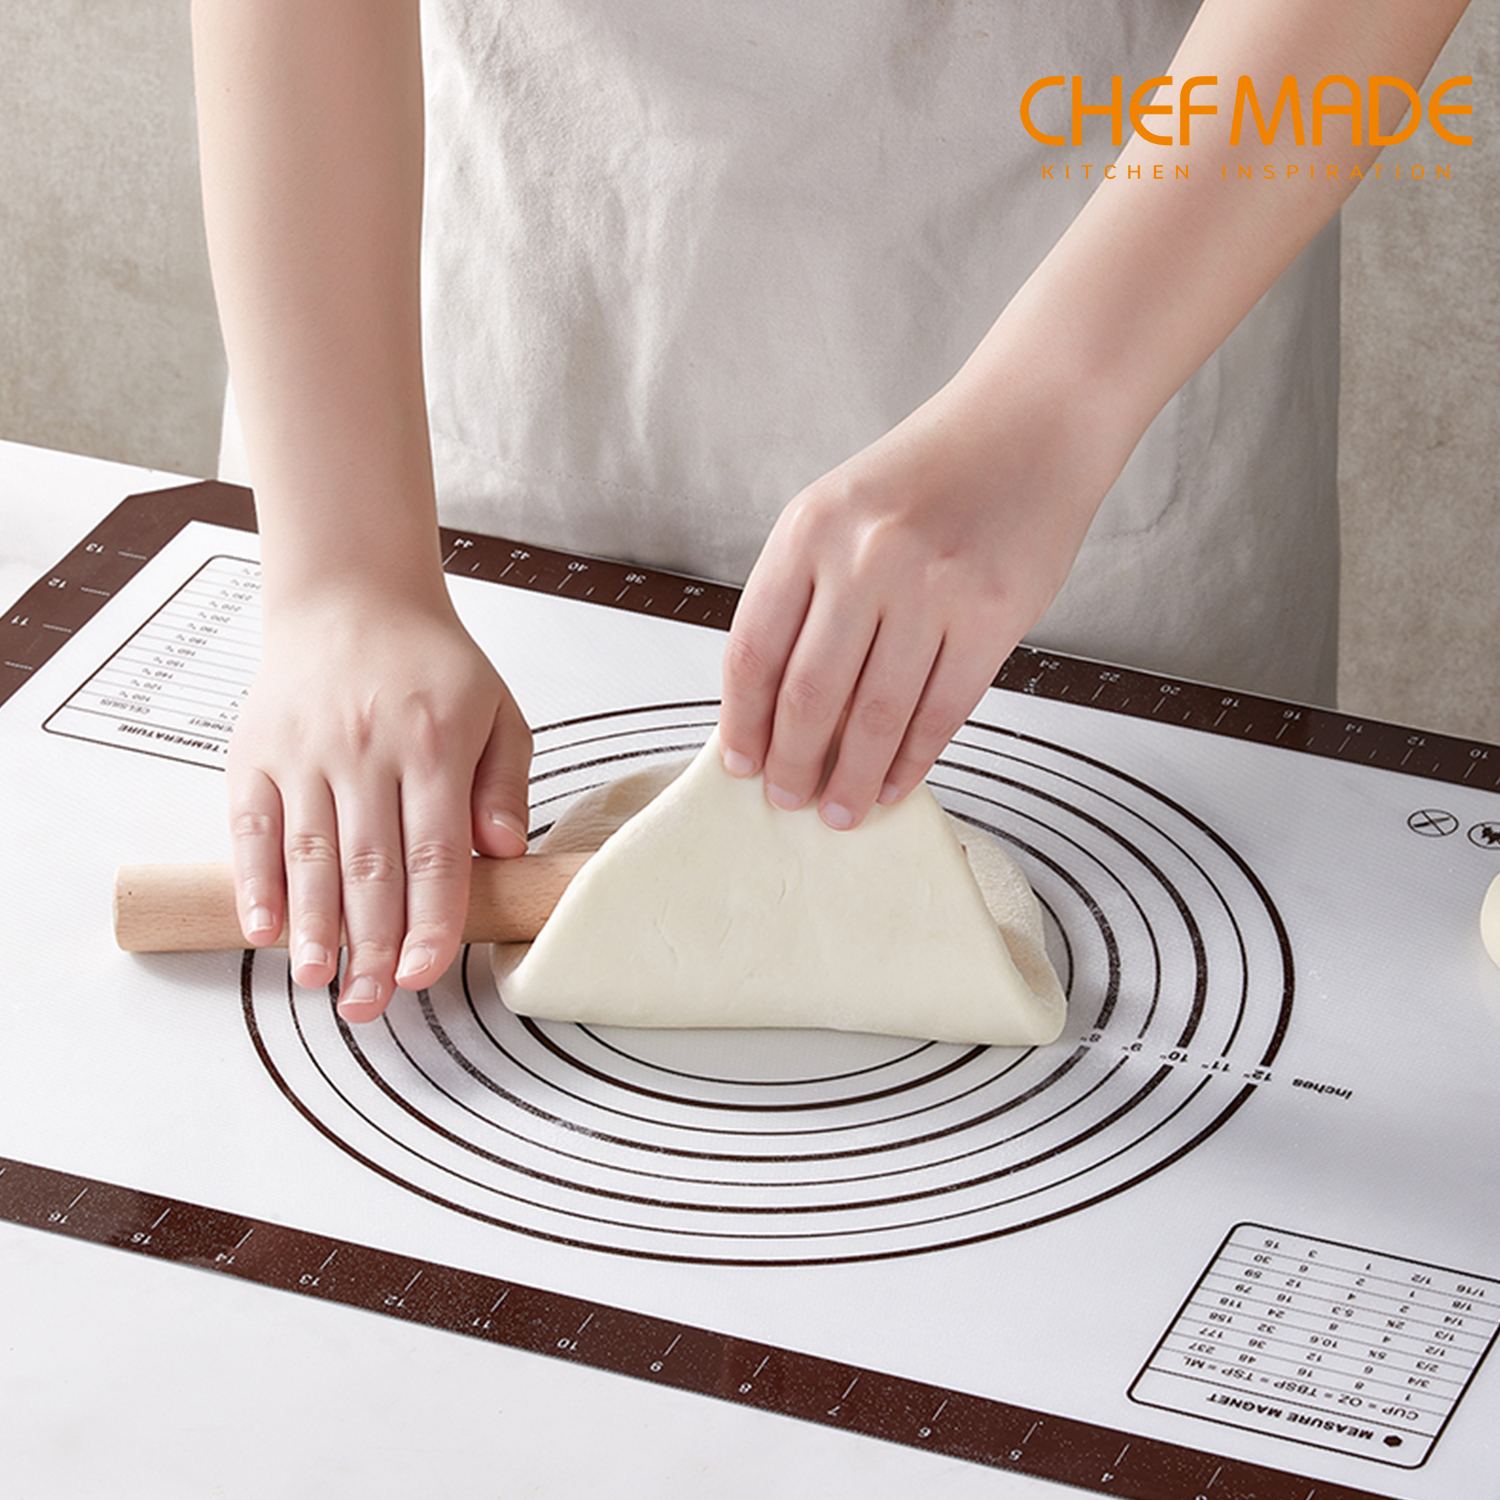 Tấm nhào bột CHEFMADE bằng Silicon cách nhiệt kèm vạch chia dùng cho làm fondant/vỏ bánh nướng 23.6" x 15.7"